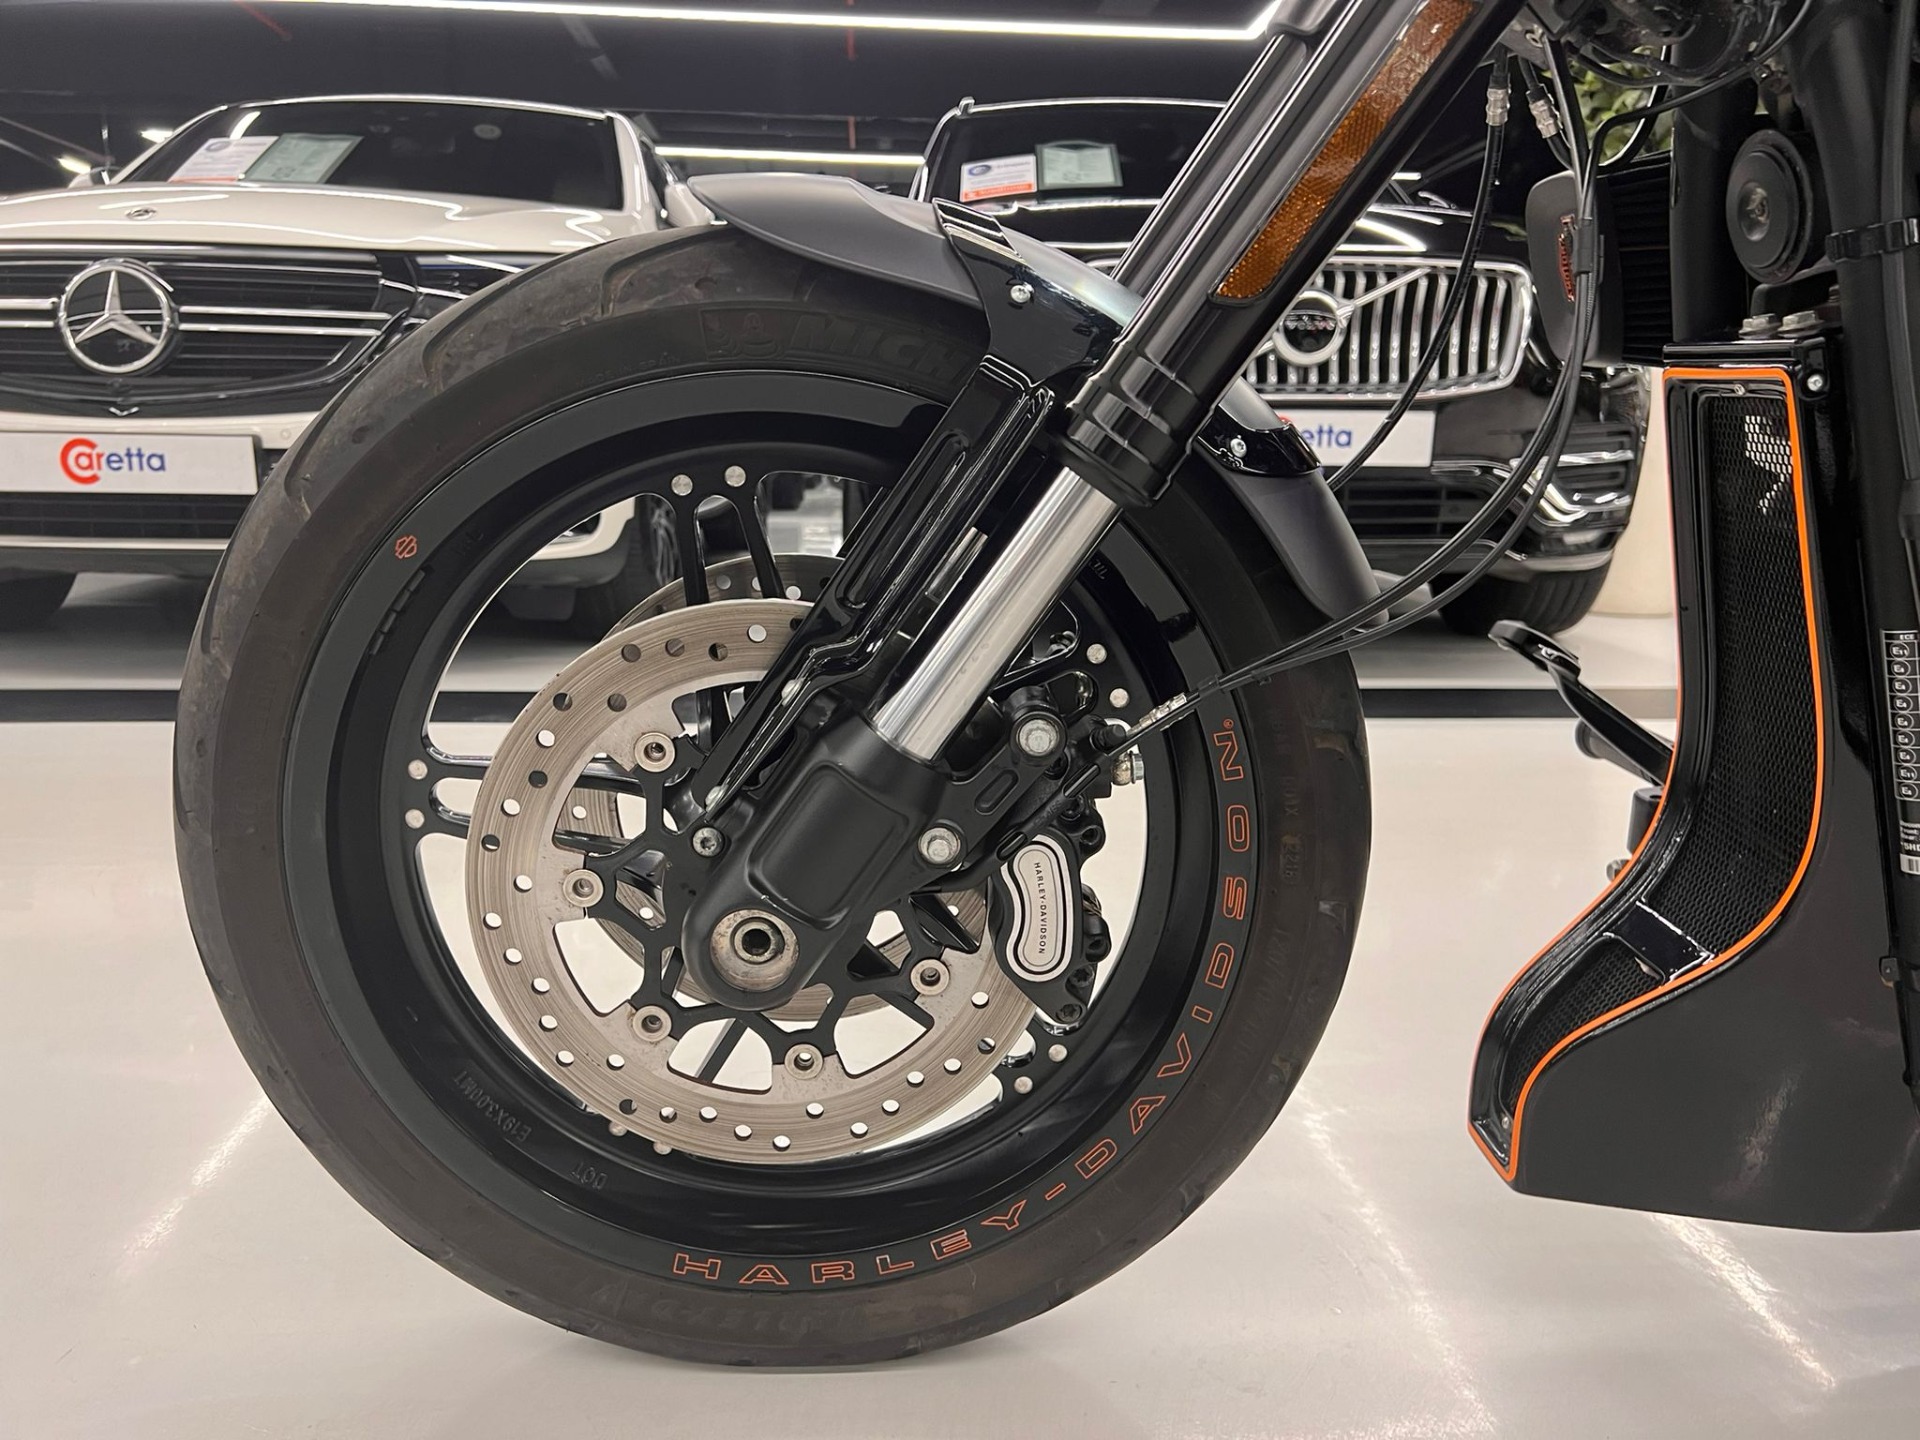 2020 Harley-Davidson FXDR 114-13